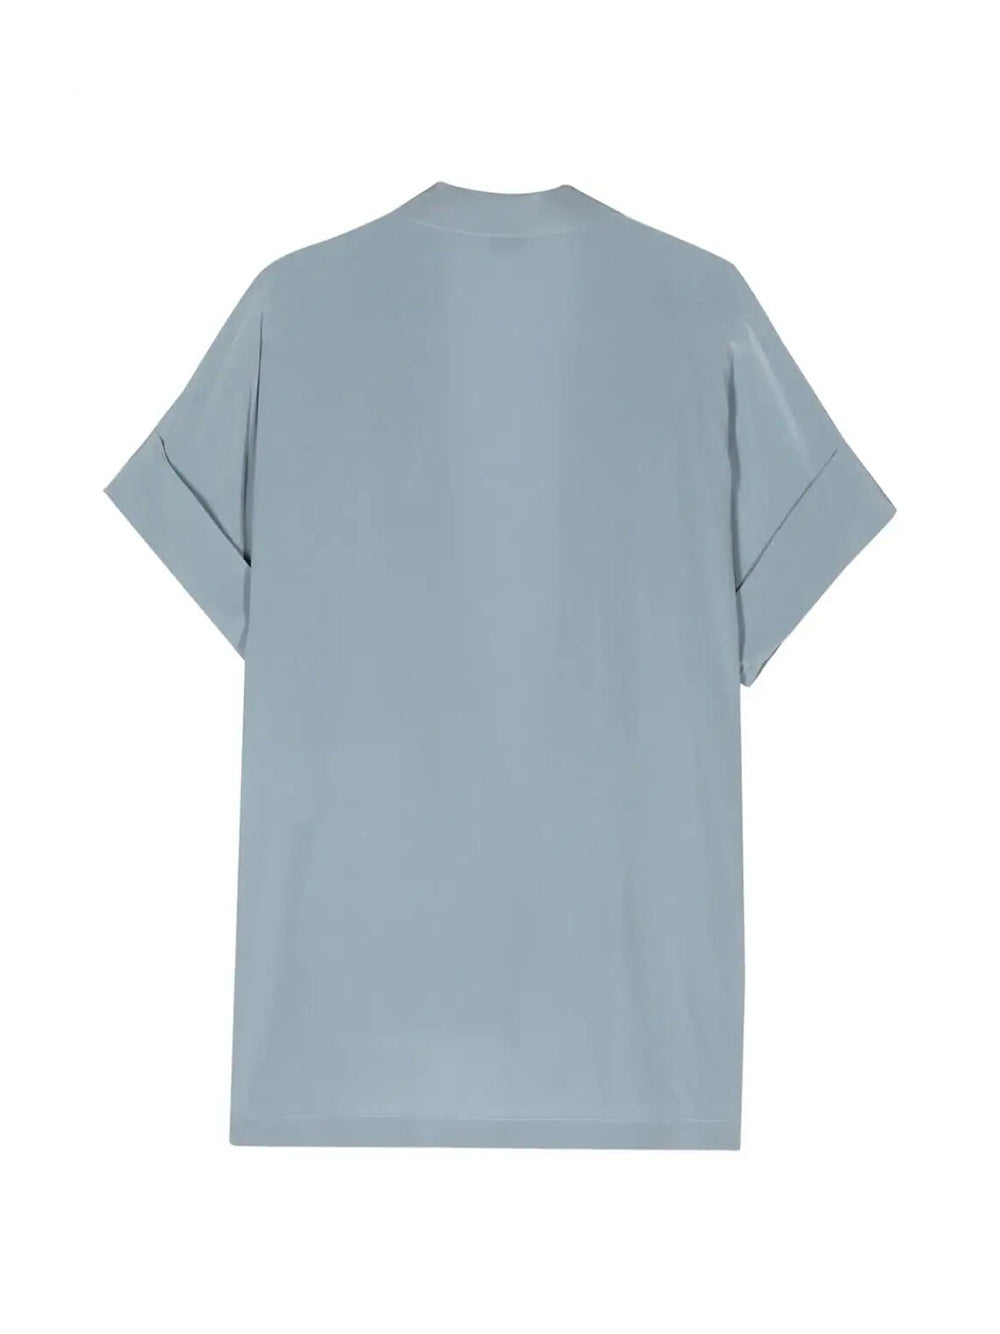 Powder blue open silk shirt